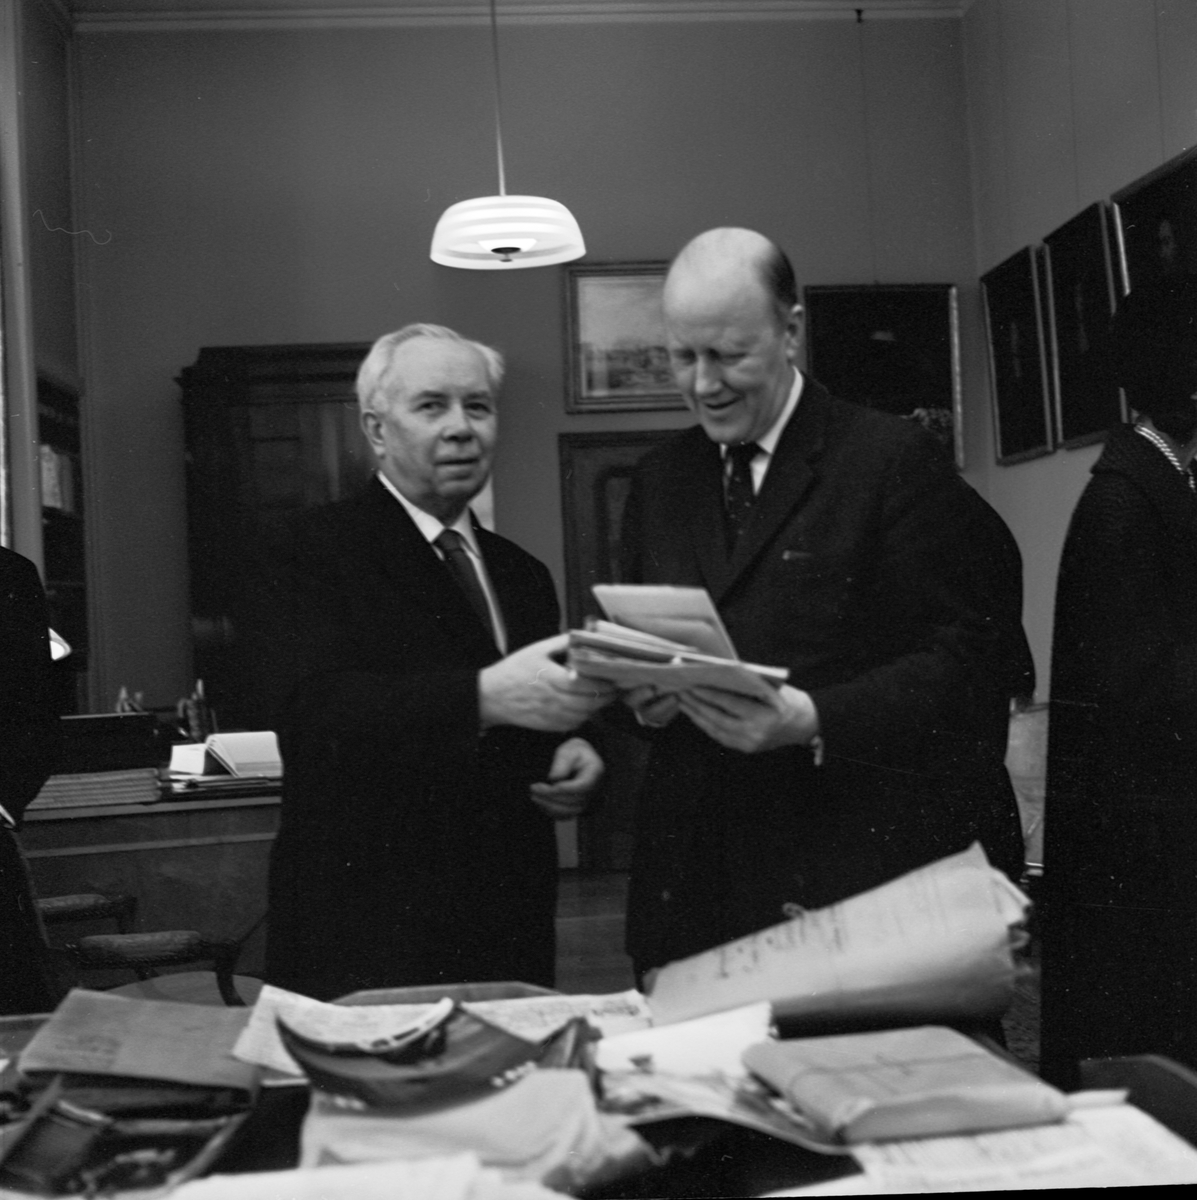 Manuskript och klipparkiv, gåvor från Ivar Lo-Johansson till Carolina Rediviva, Uppsala, februari 1963